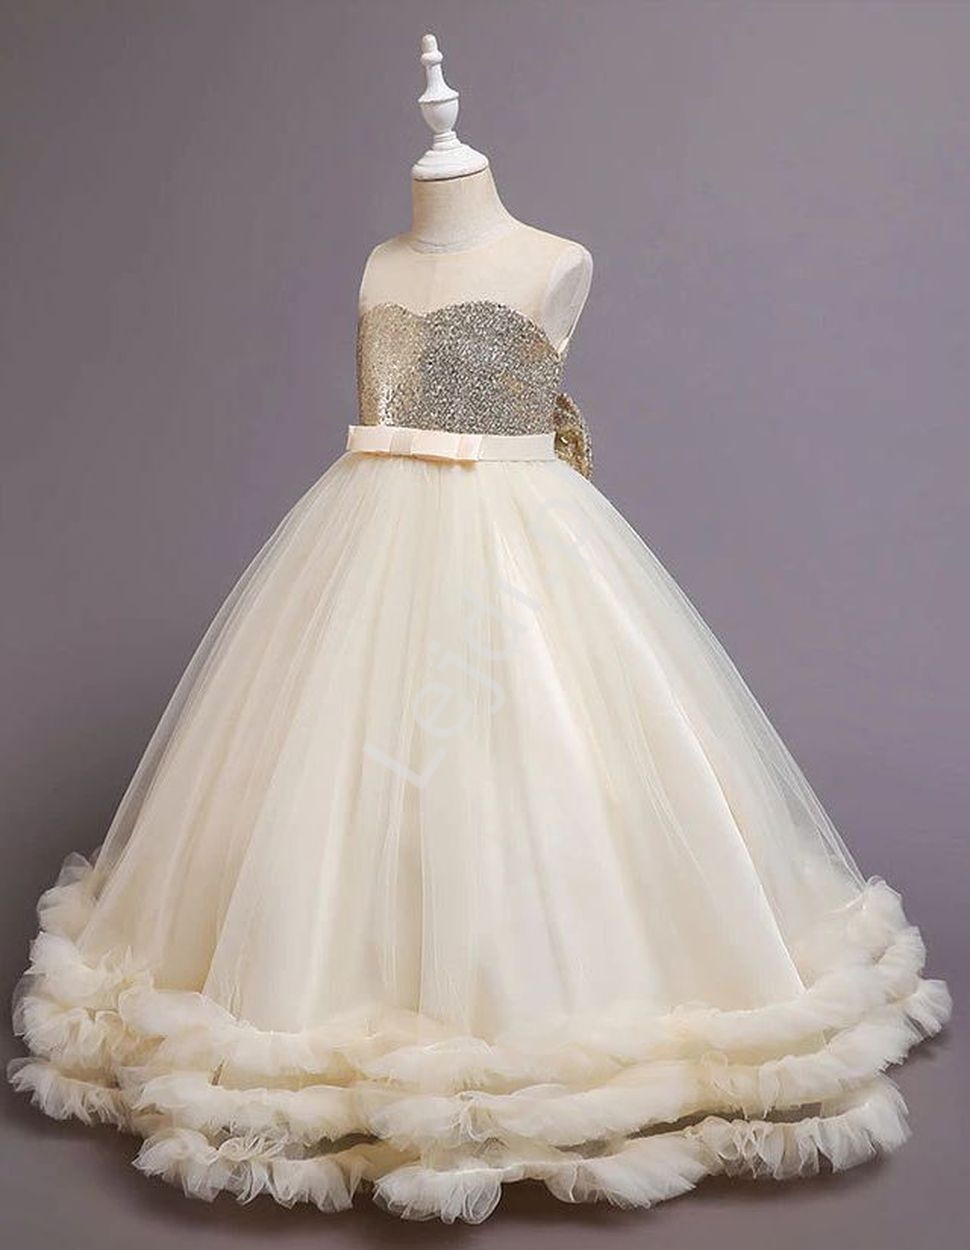 Waniliowa suknia dziecięca na wesele, dla małej druhny, balowa suknia dla dziewczynki